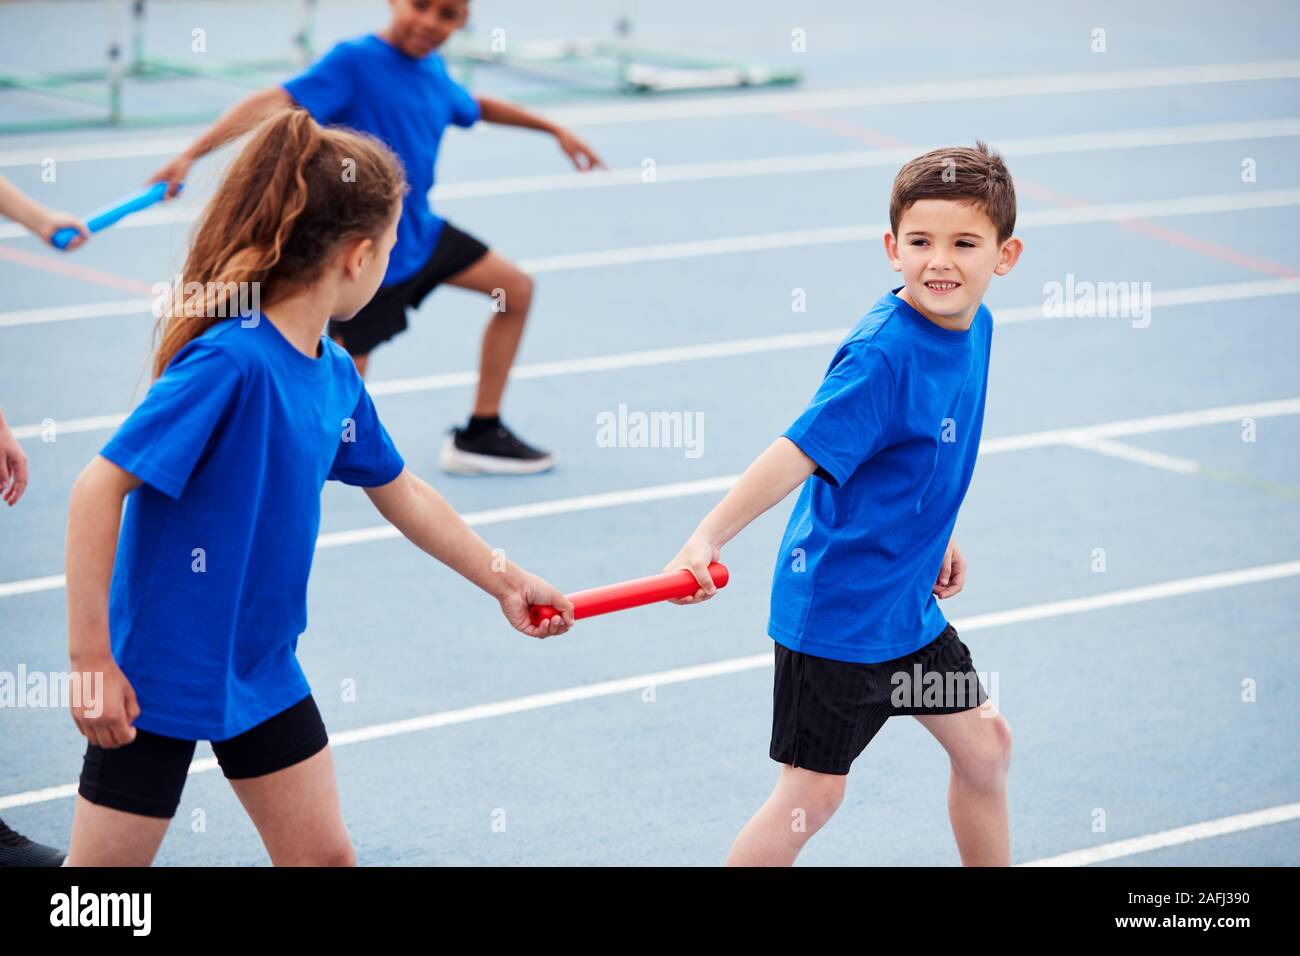 Los niños en el equipo de atletismo compitiendo en la carrera de relevos en día deportivo Foto de stock